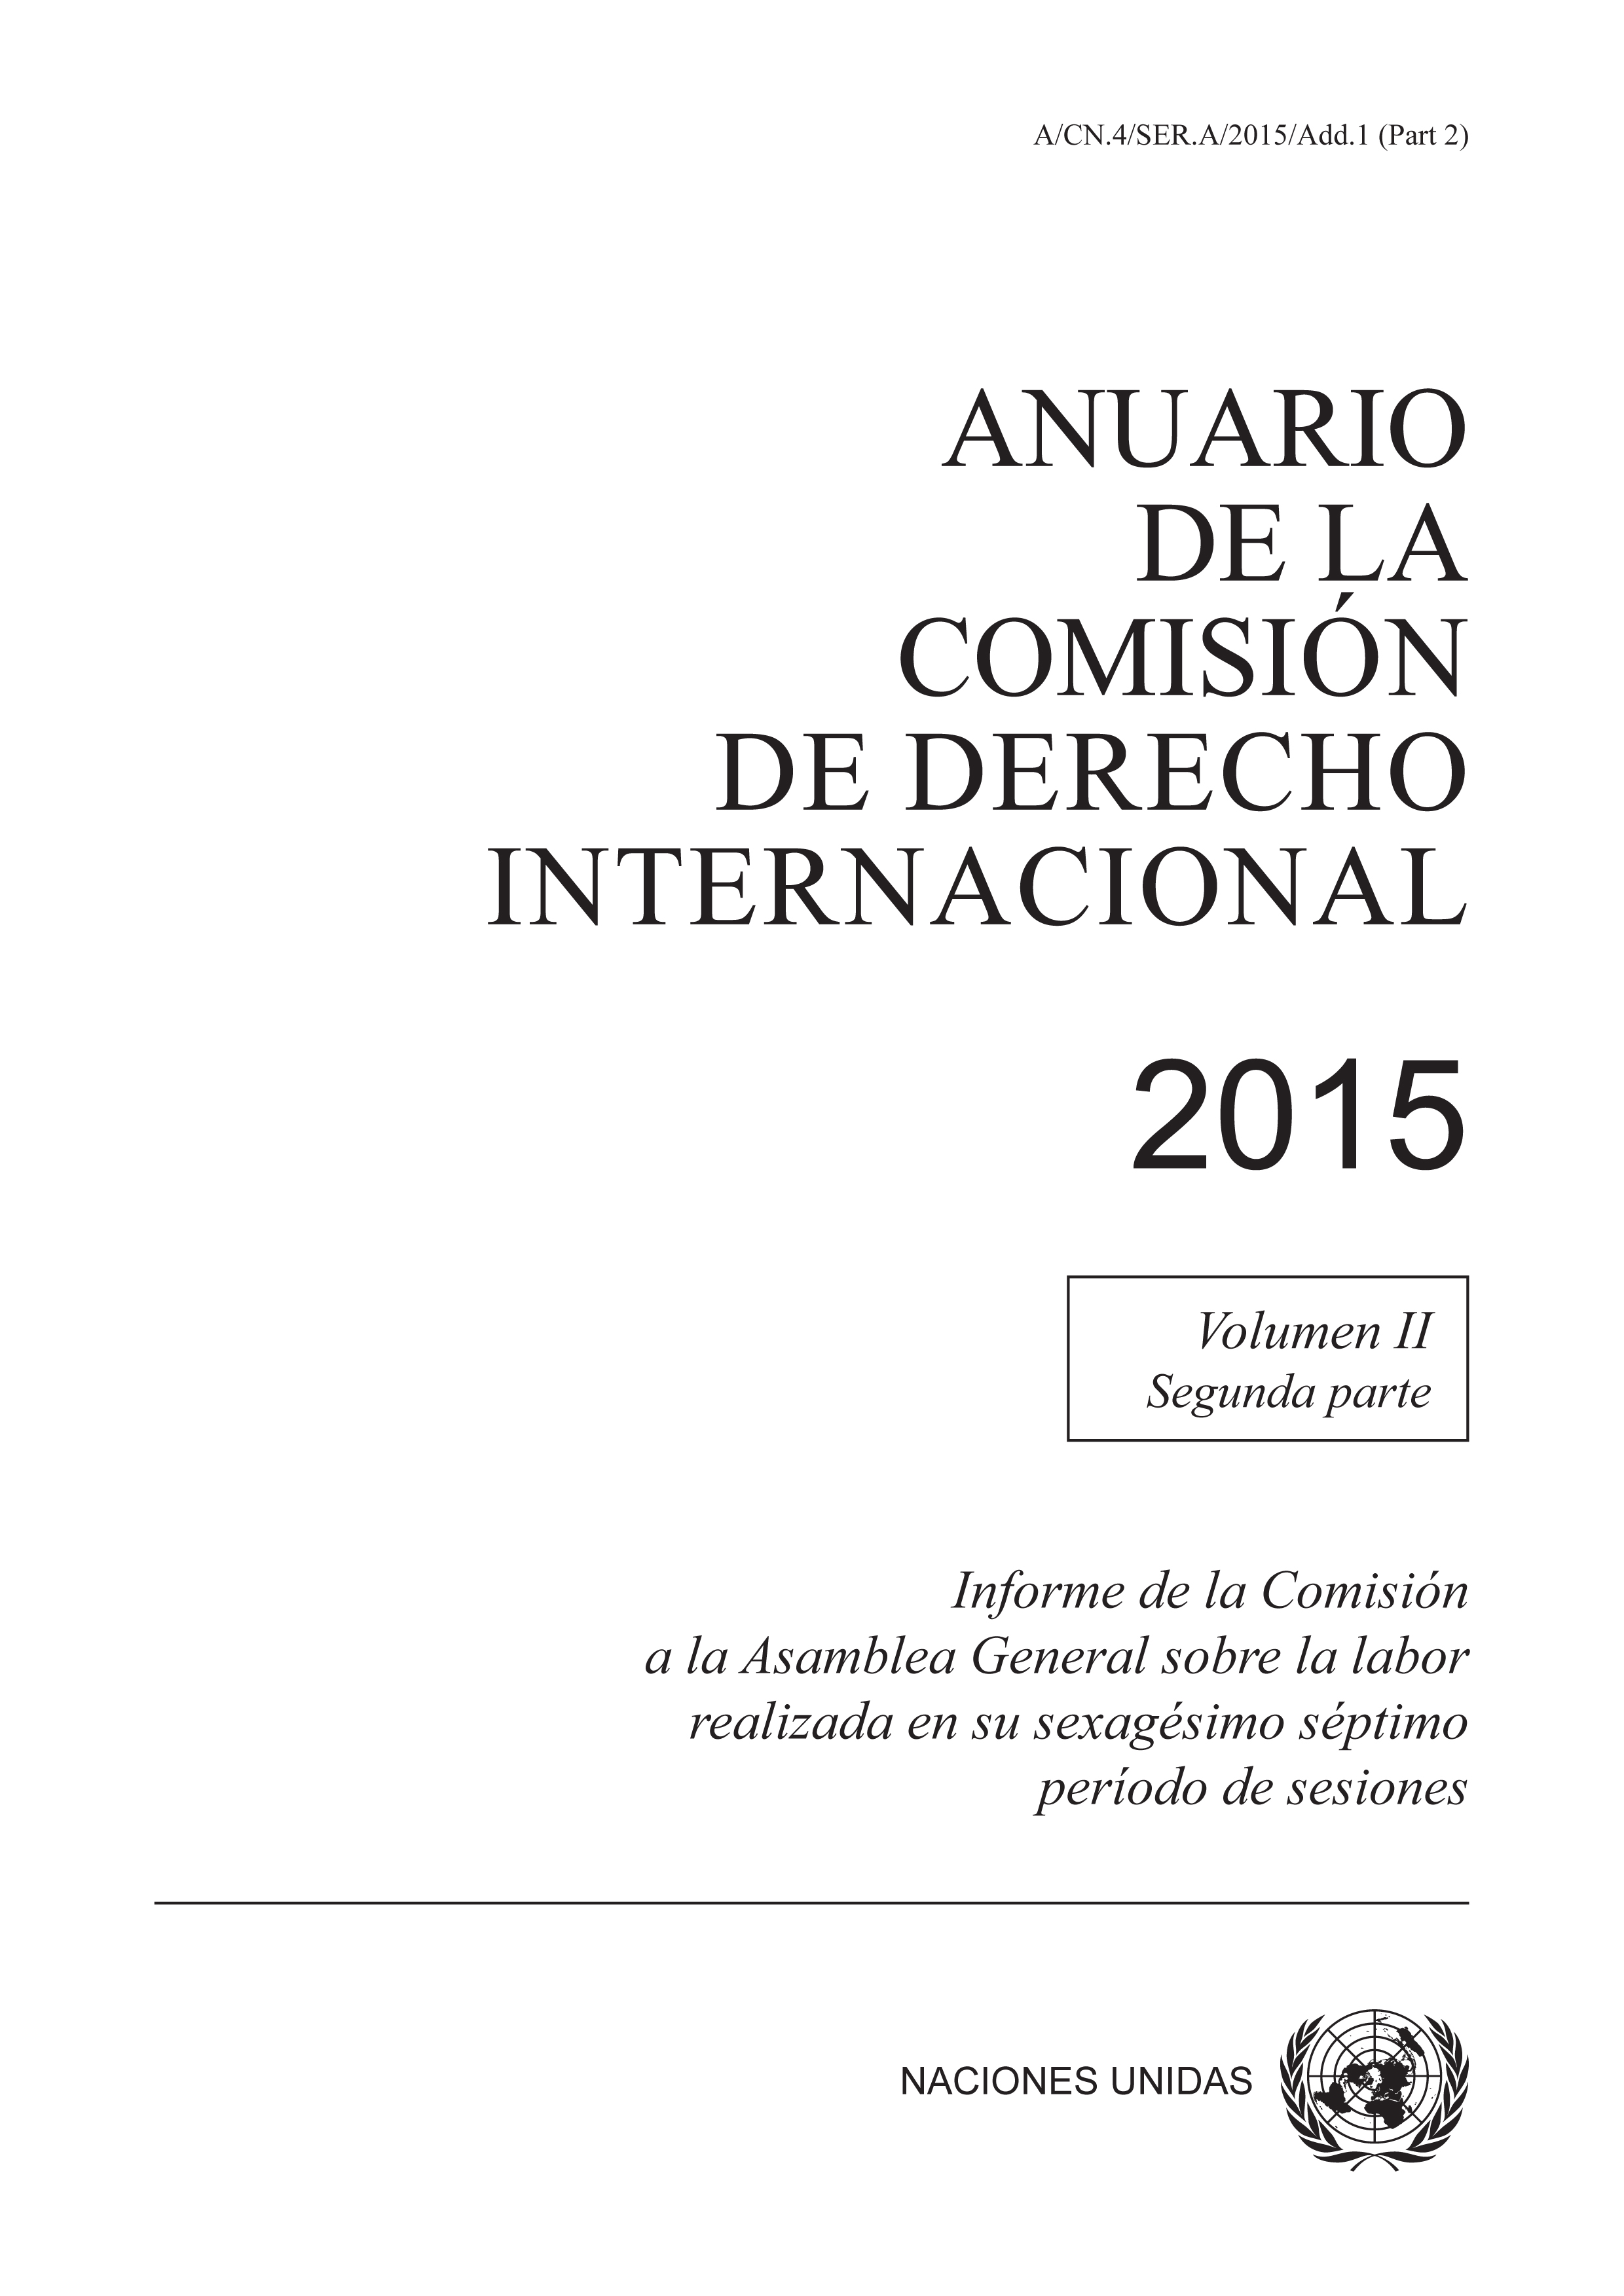 image of Anuario de la Comisión de Derecho Internacional 2015, Vol. II, Parte 2